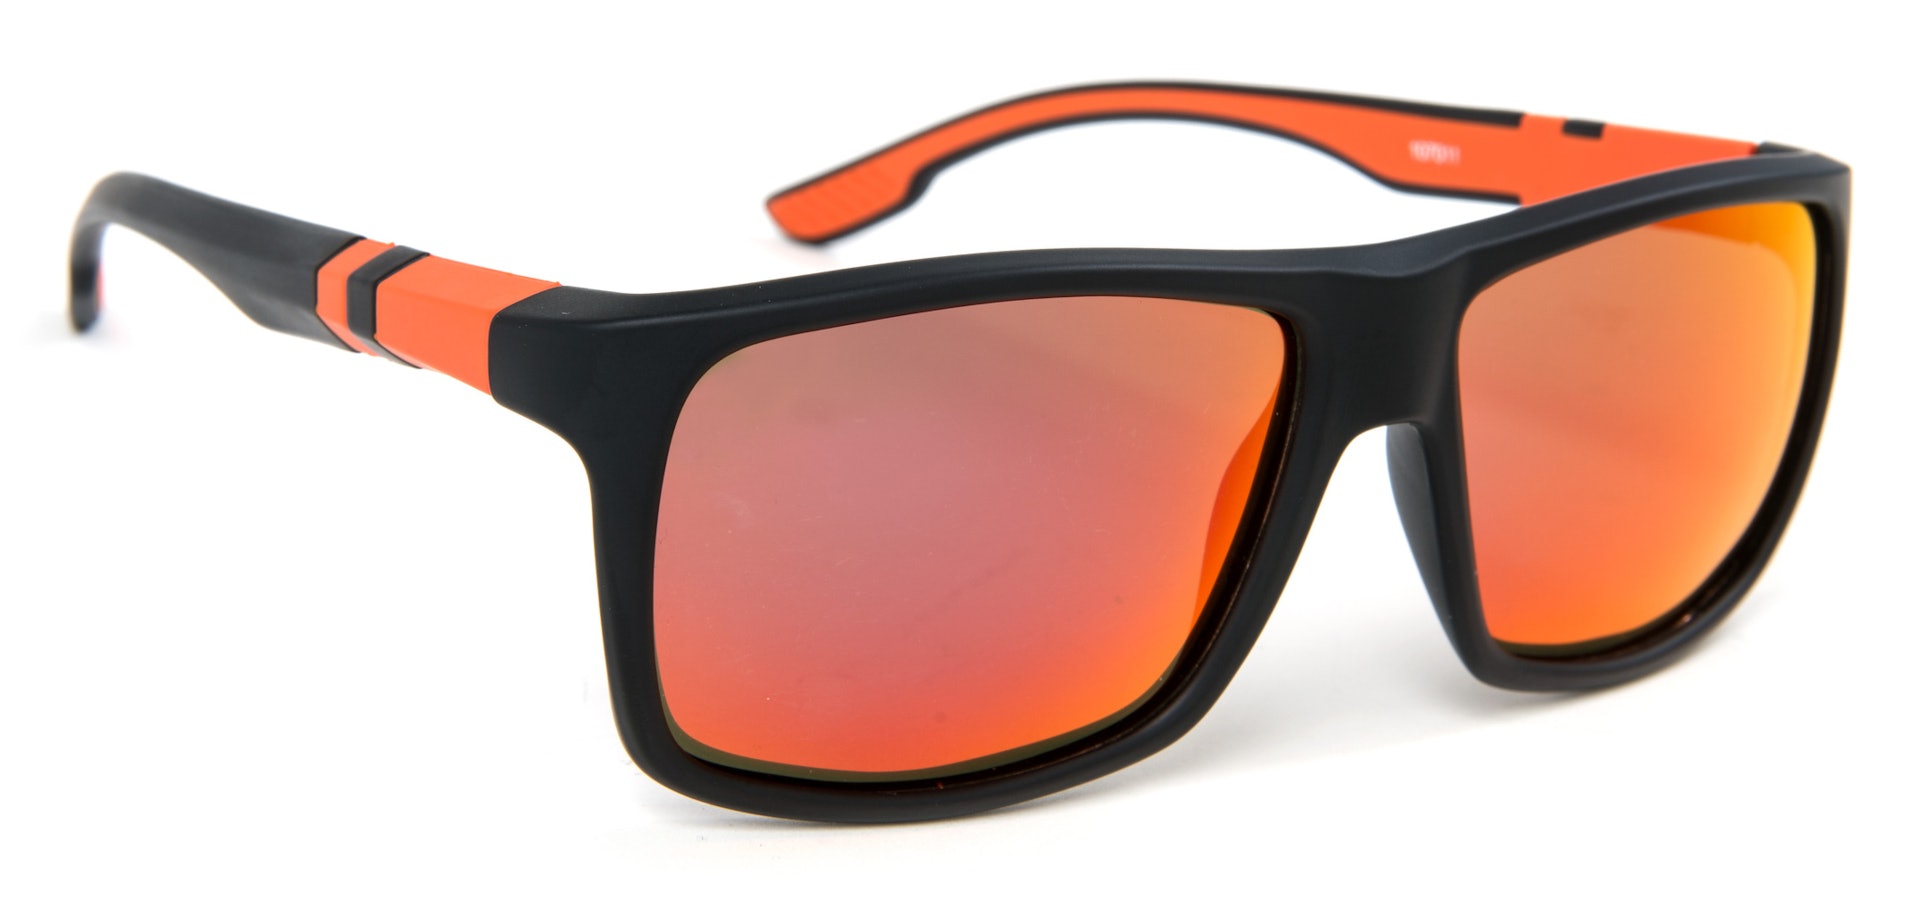 LPX Sunglasses - Amber Lens (slide 1 of 2)